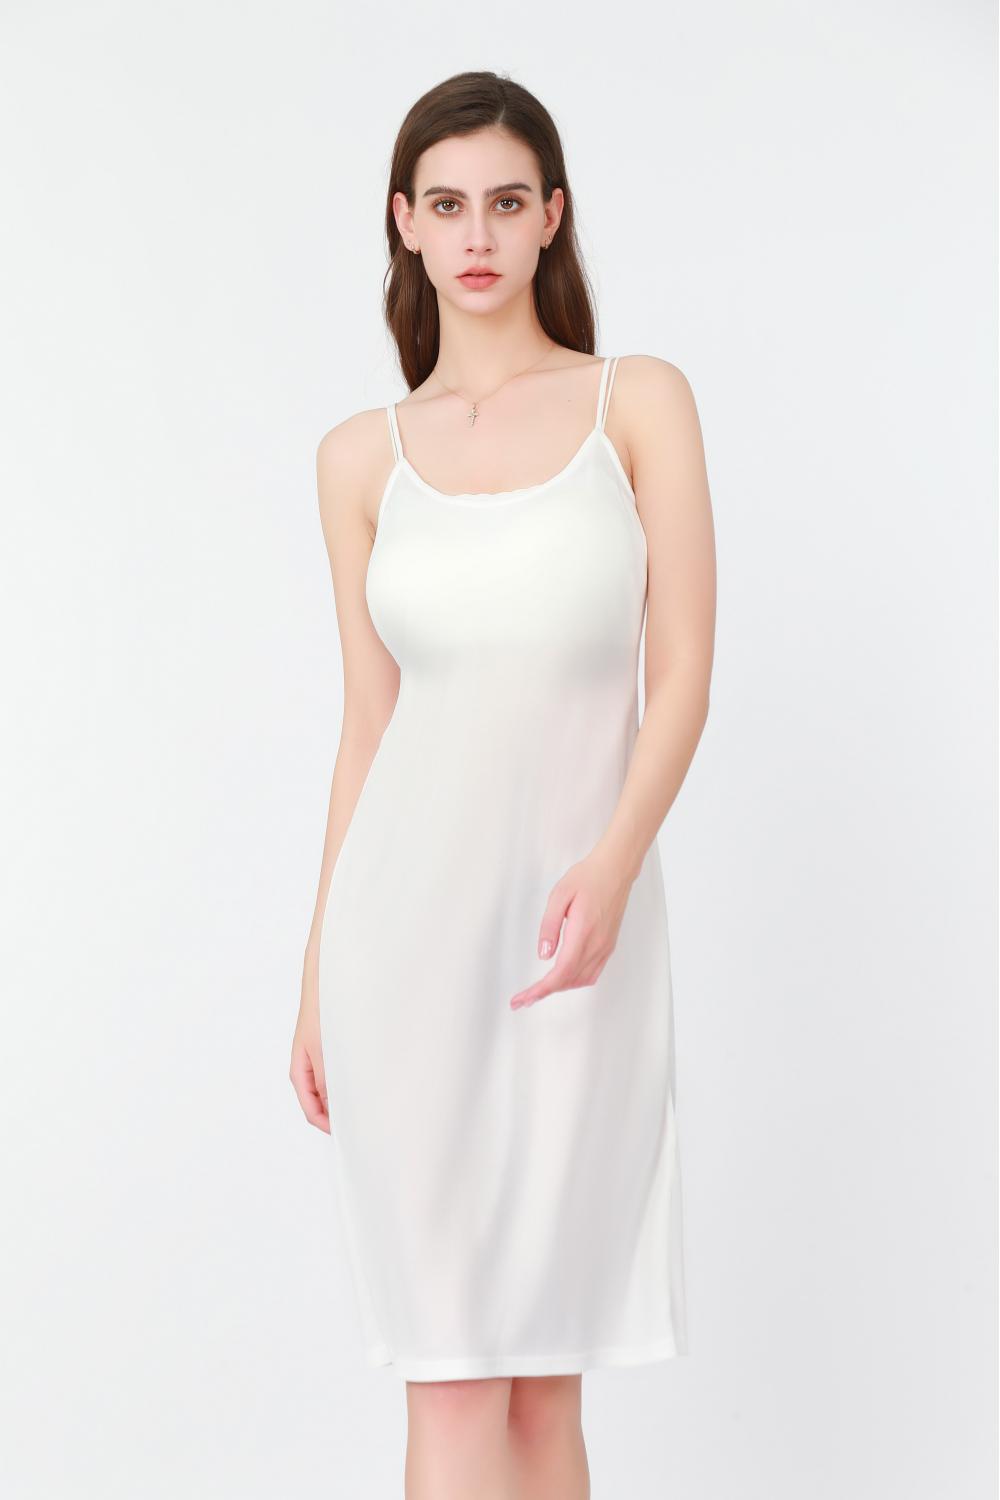 लेडीज व्हाइट स्लिप ड्रेस